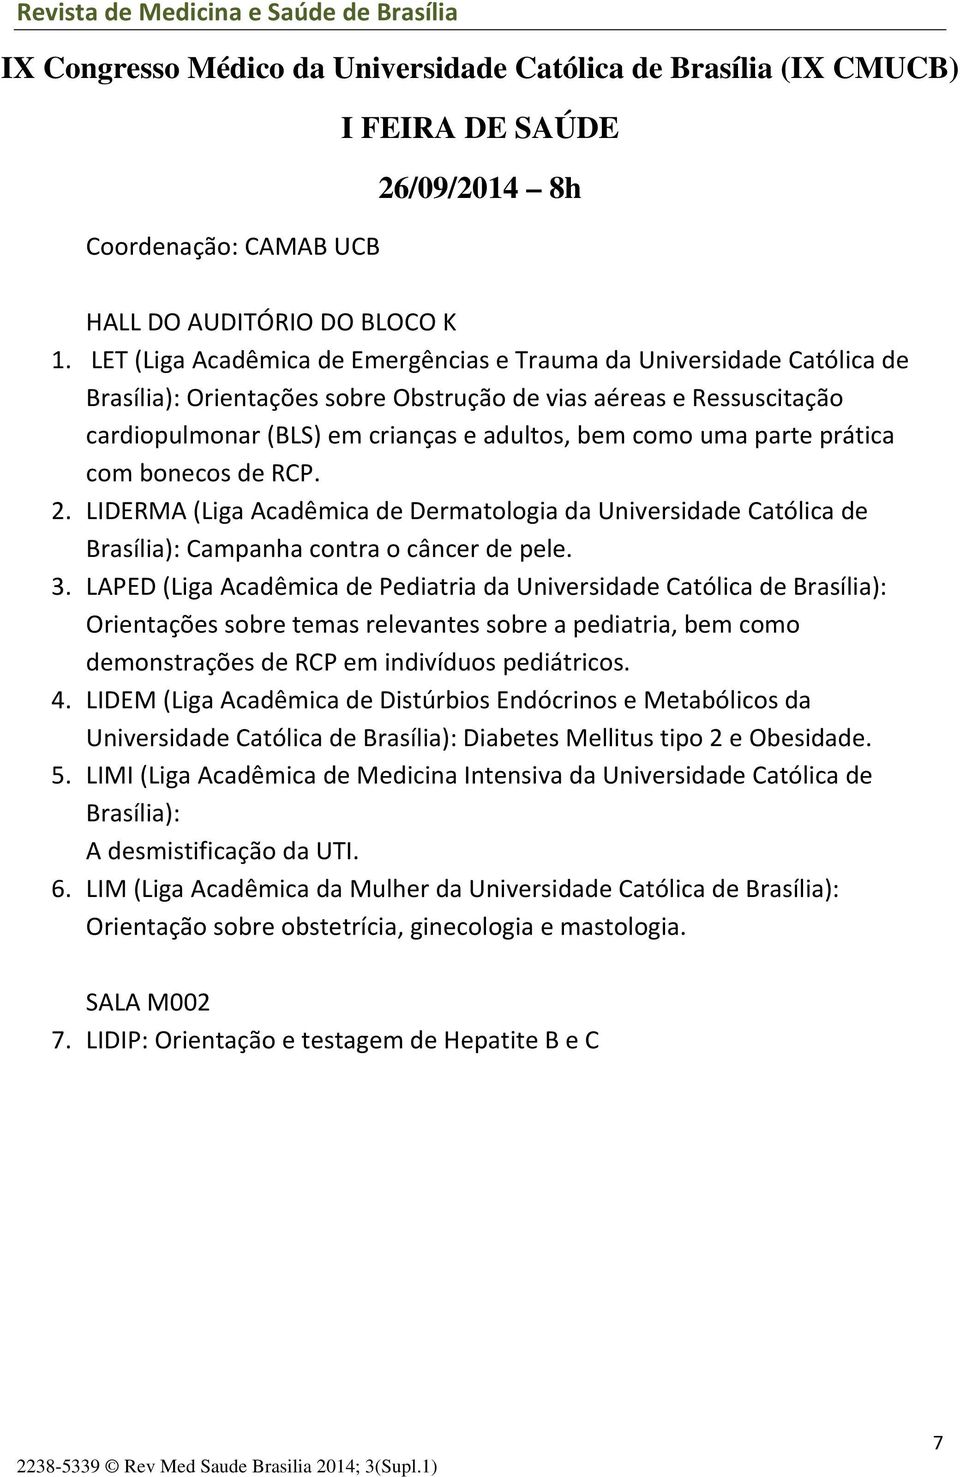 parte prática com bonecos de RCP. 2. LIDERMA (Liga Acadêmica de Dermatologia da Universidade Católica de Brasília): Campanha contra o câncer de pele. 3.